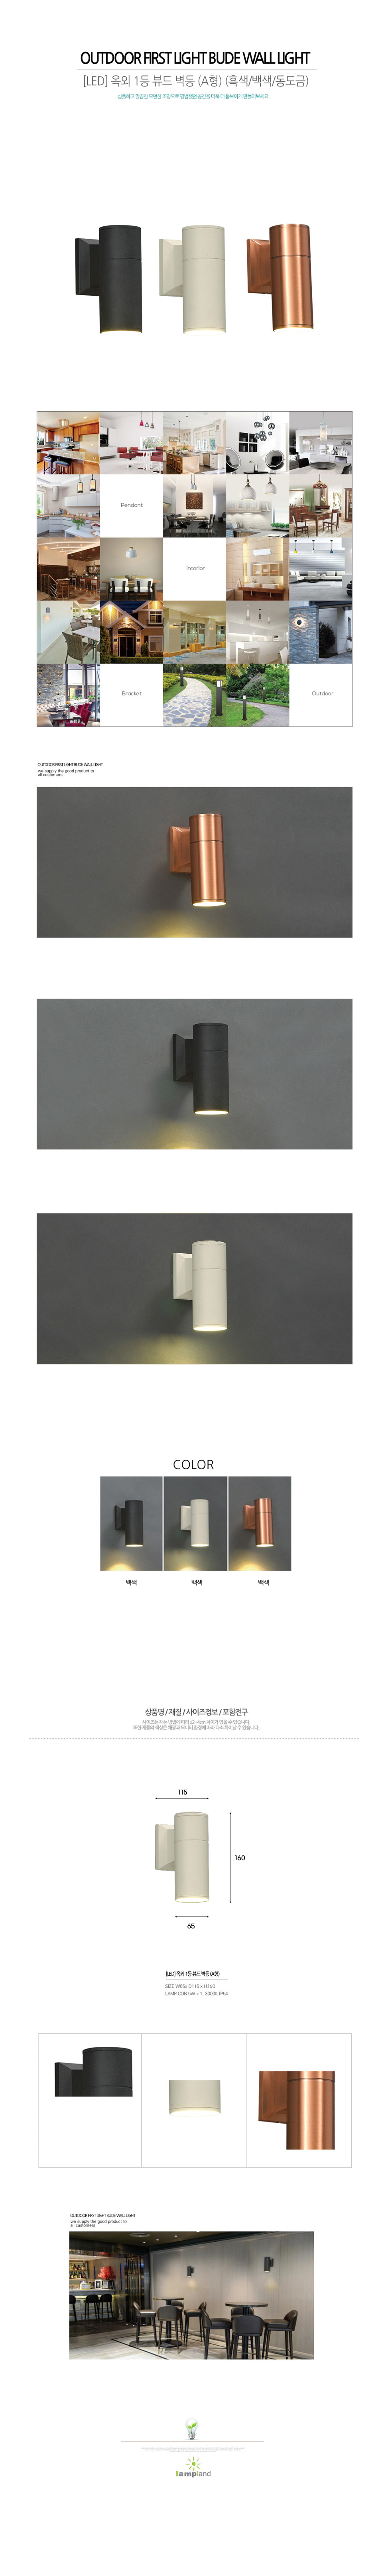 [LED 5W] 옥외 1등 뷰드 COB 벽등 (A형) (흑색/백색/동도금)